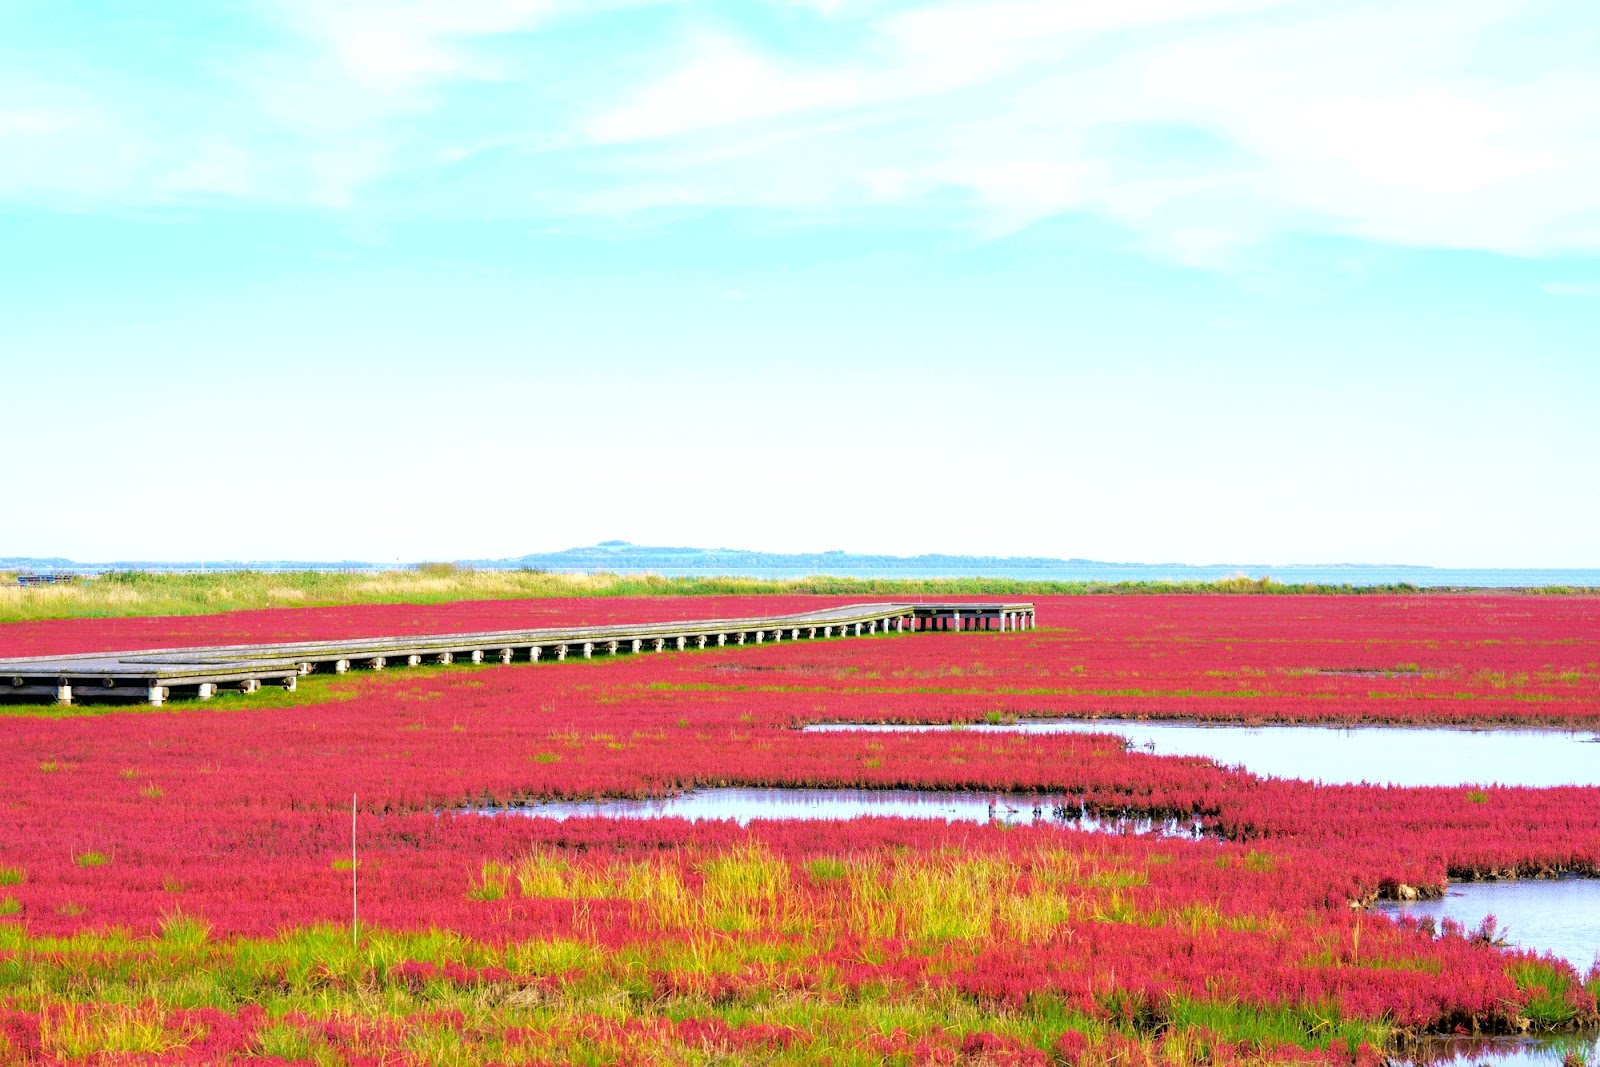 日本一のサンゴ草群生地が紅色に染まる「能取湖サンゴ草群落地」